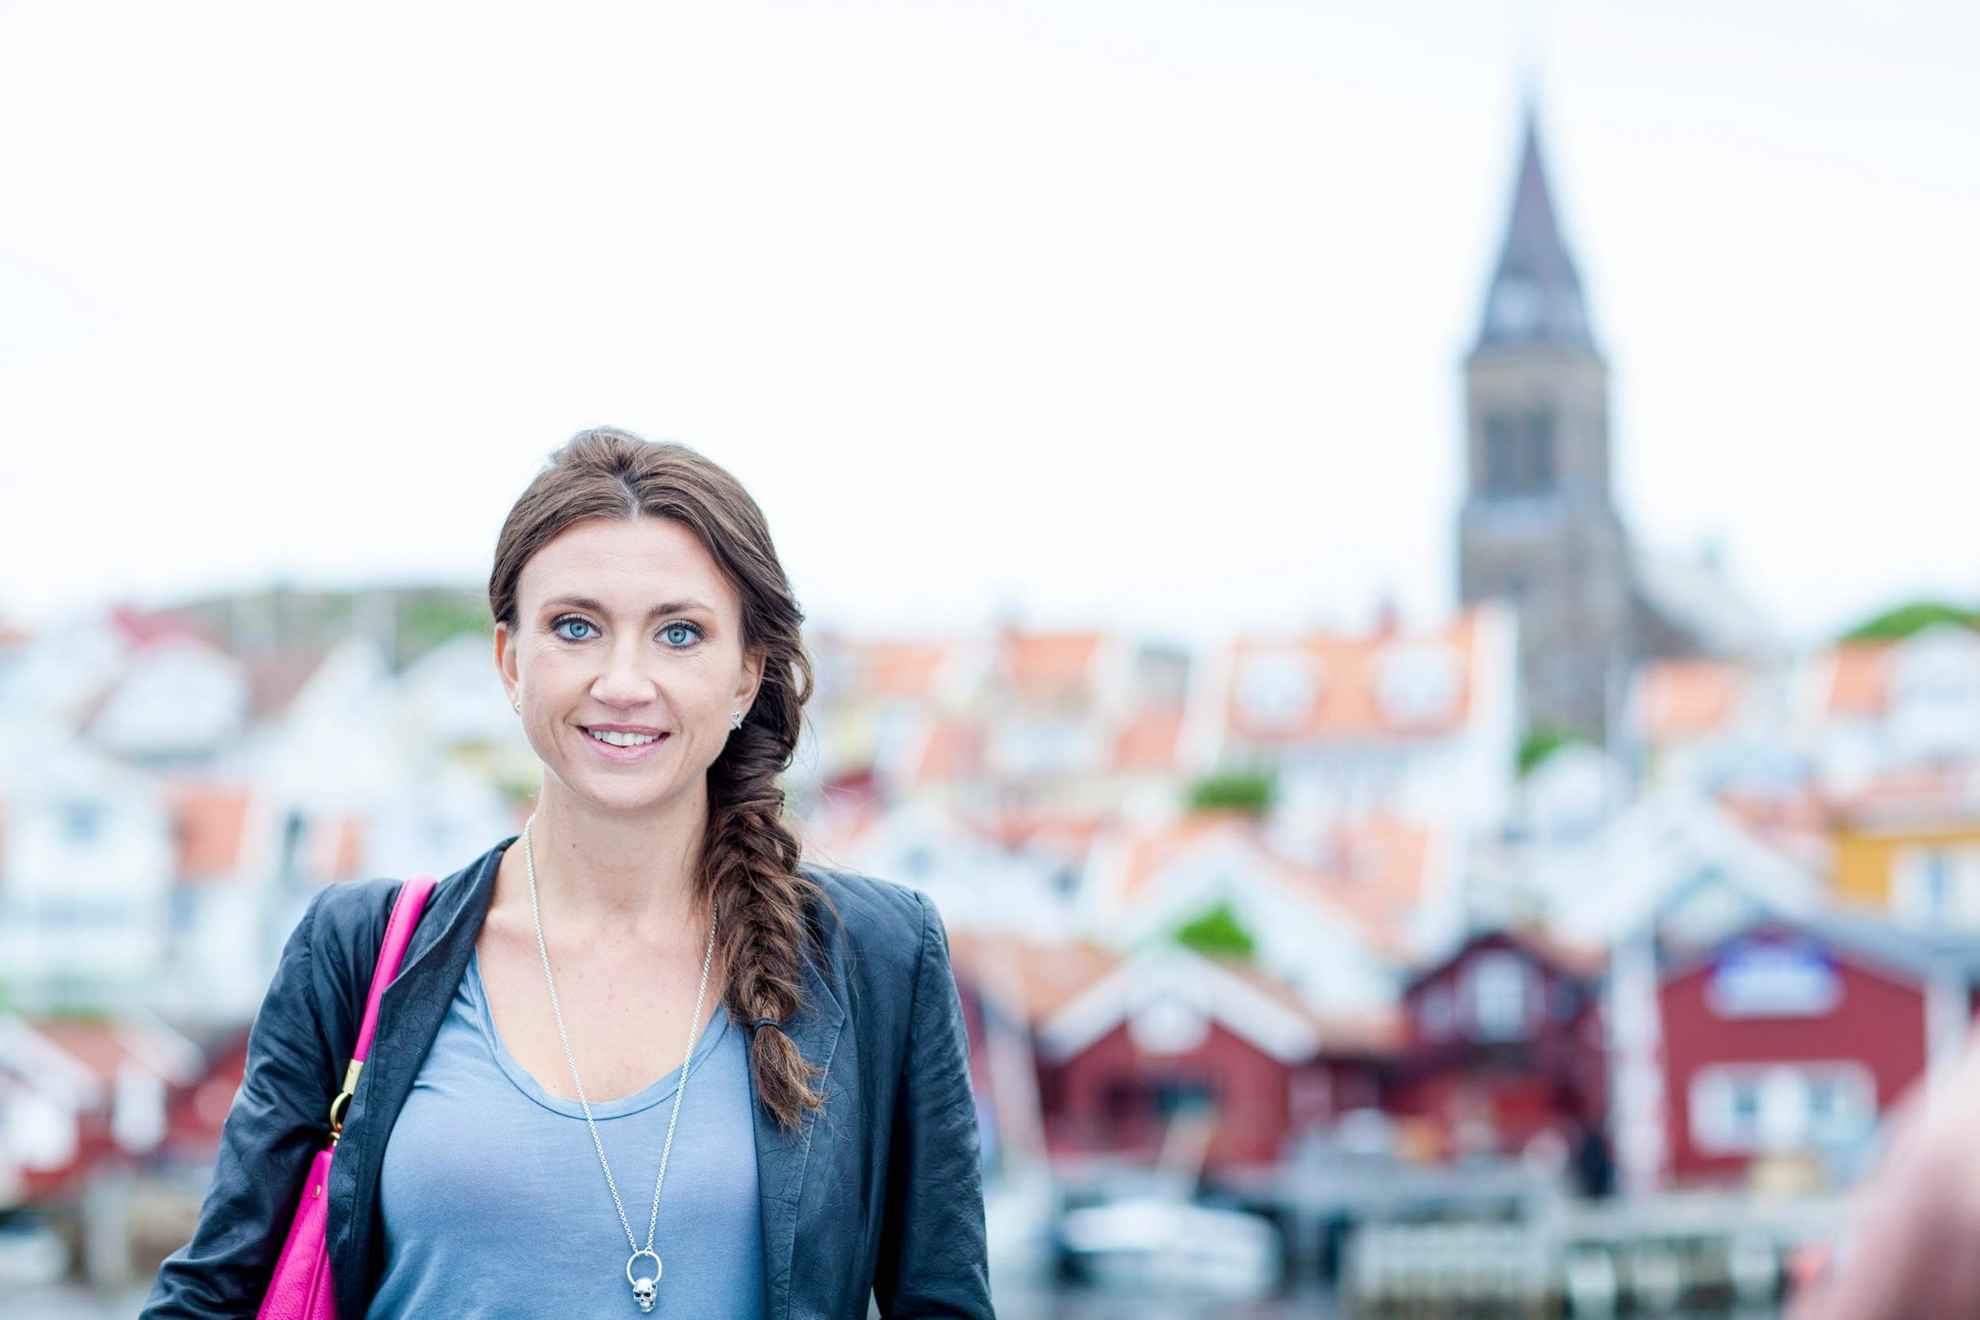 Autorin Camilla Läckberg steht vor Bootshäusern und einer Kirche in der Ferne.